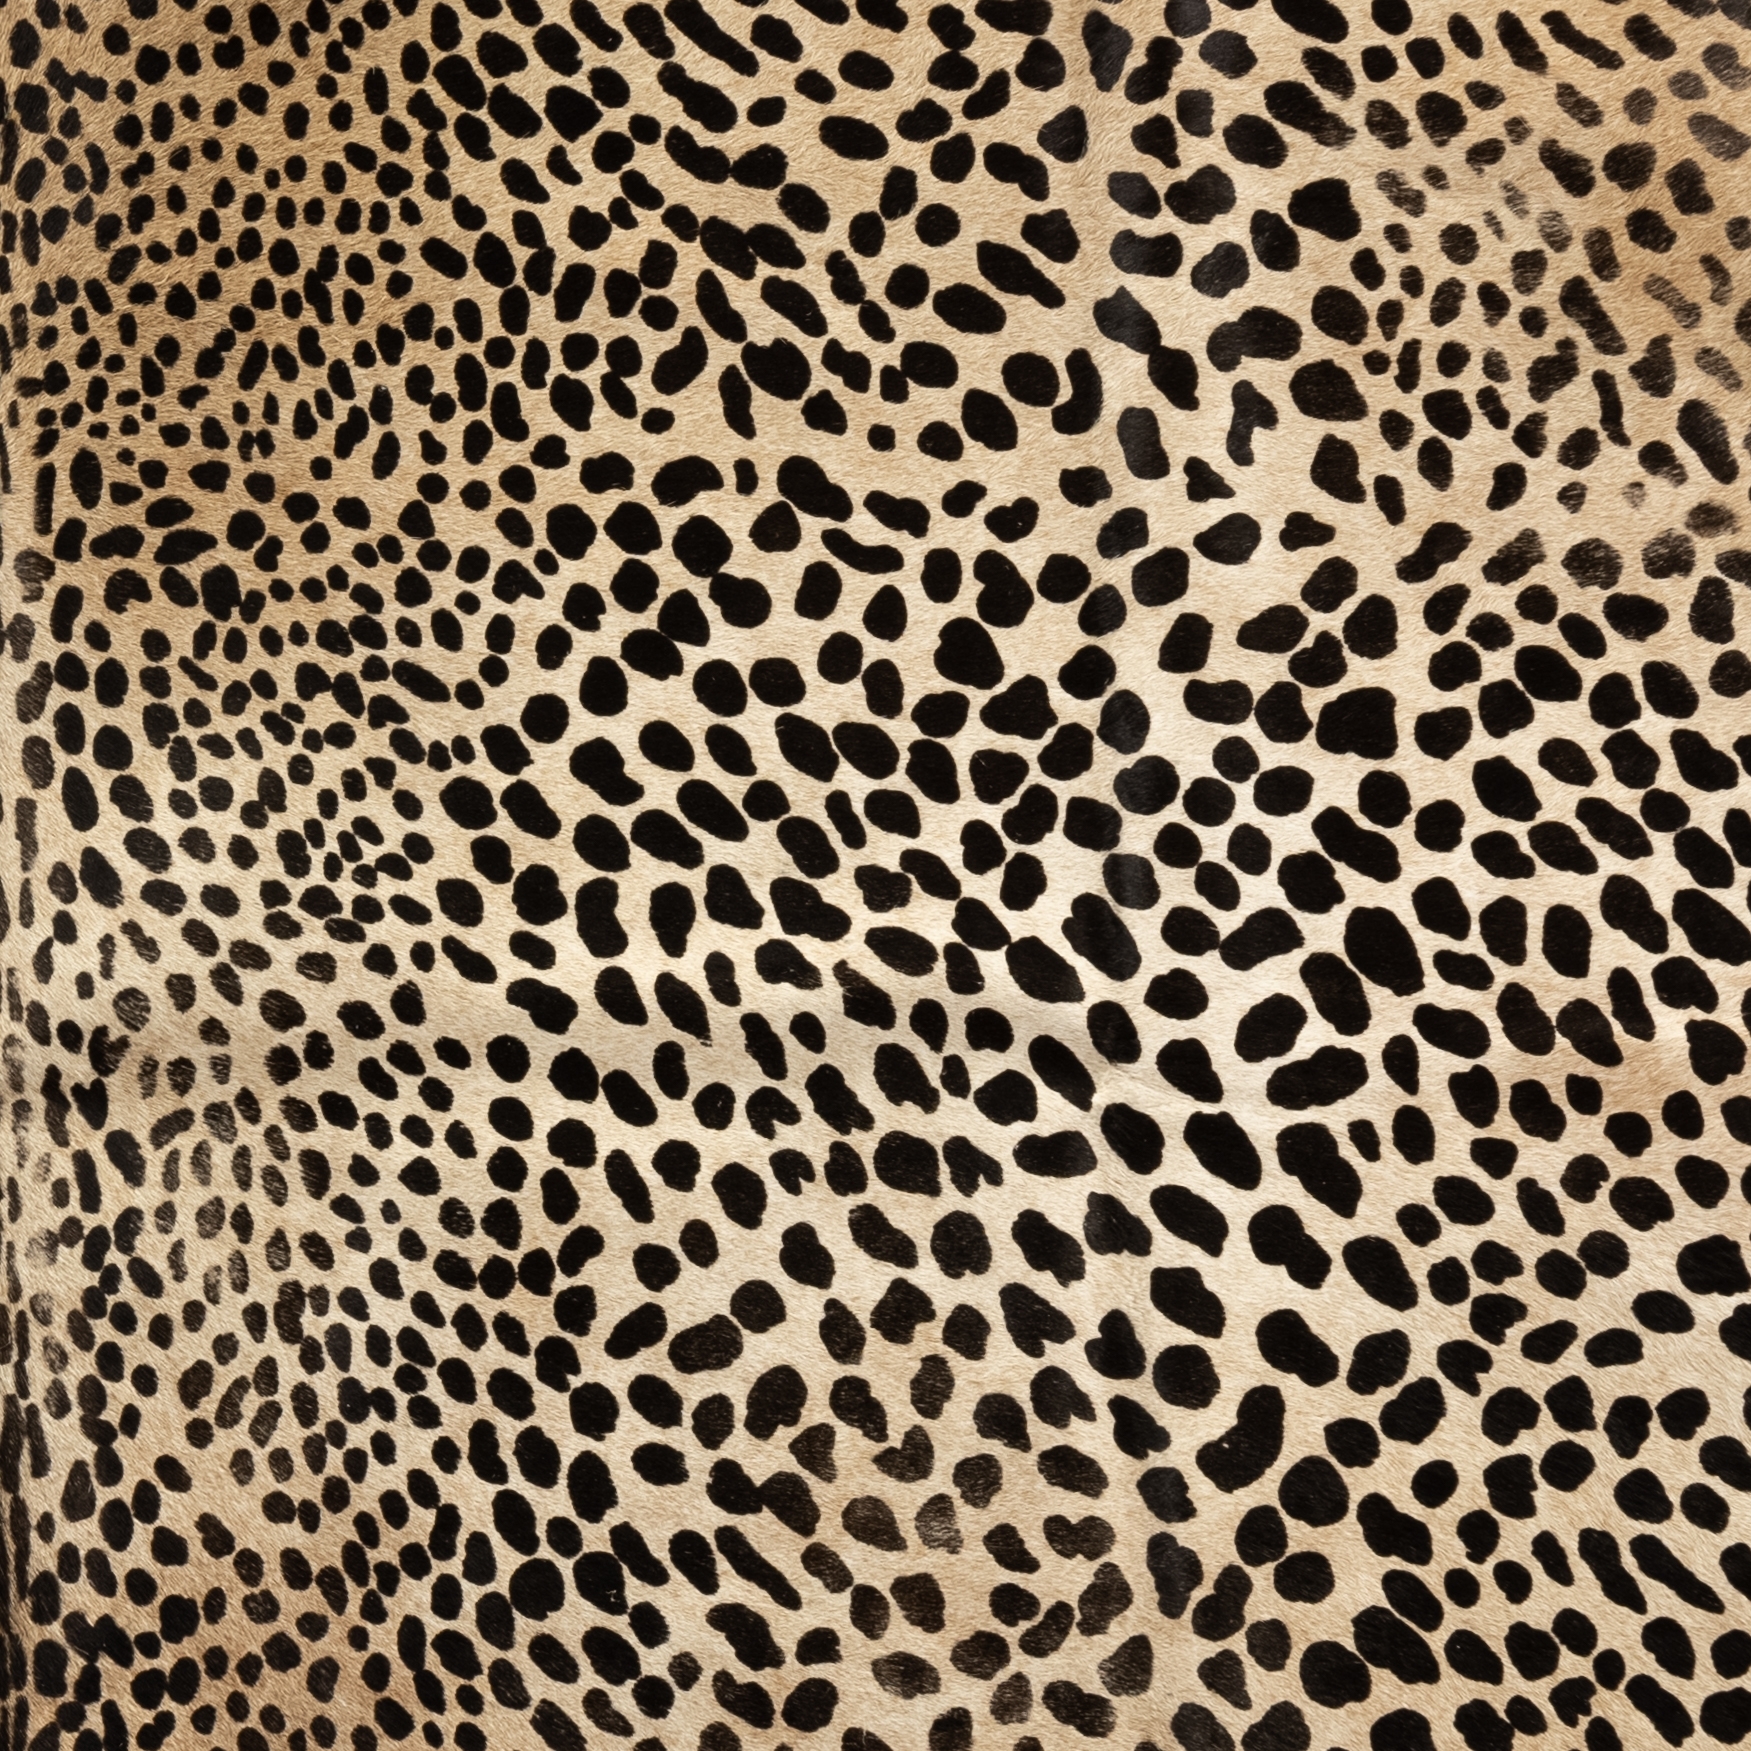 Leopard Printed Hide Rug-Brown & Black - Image 3